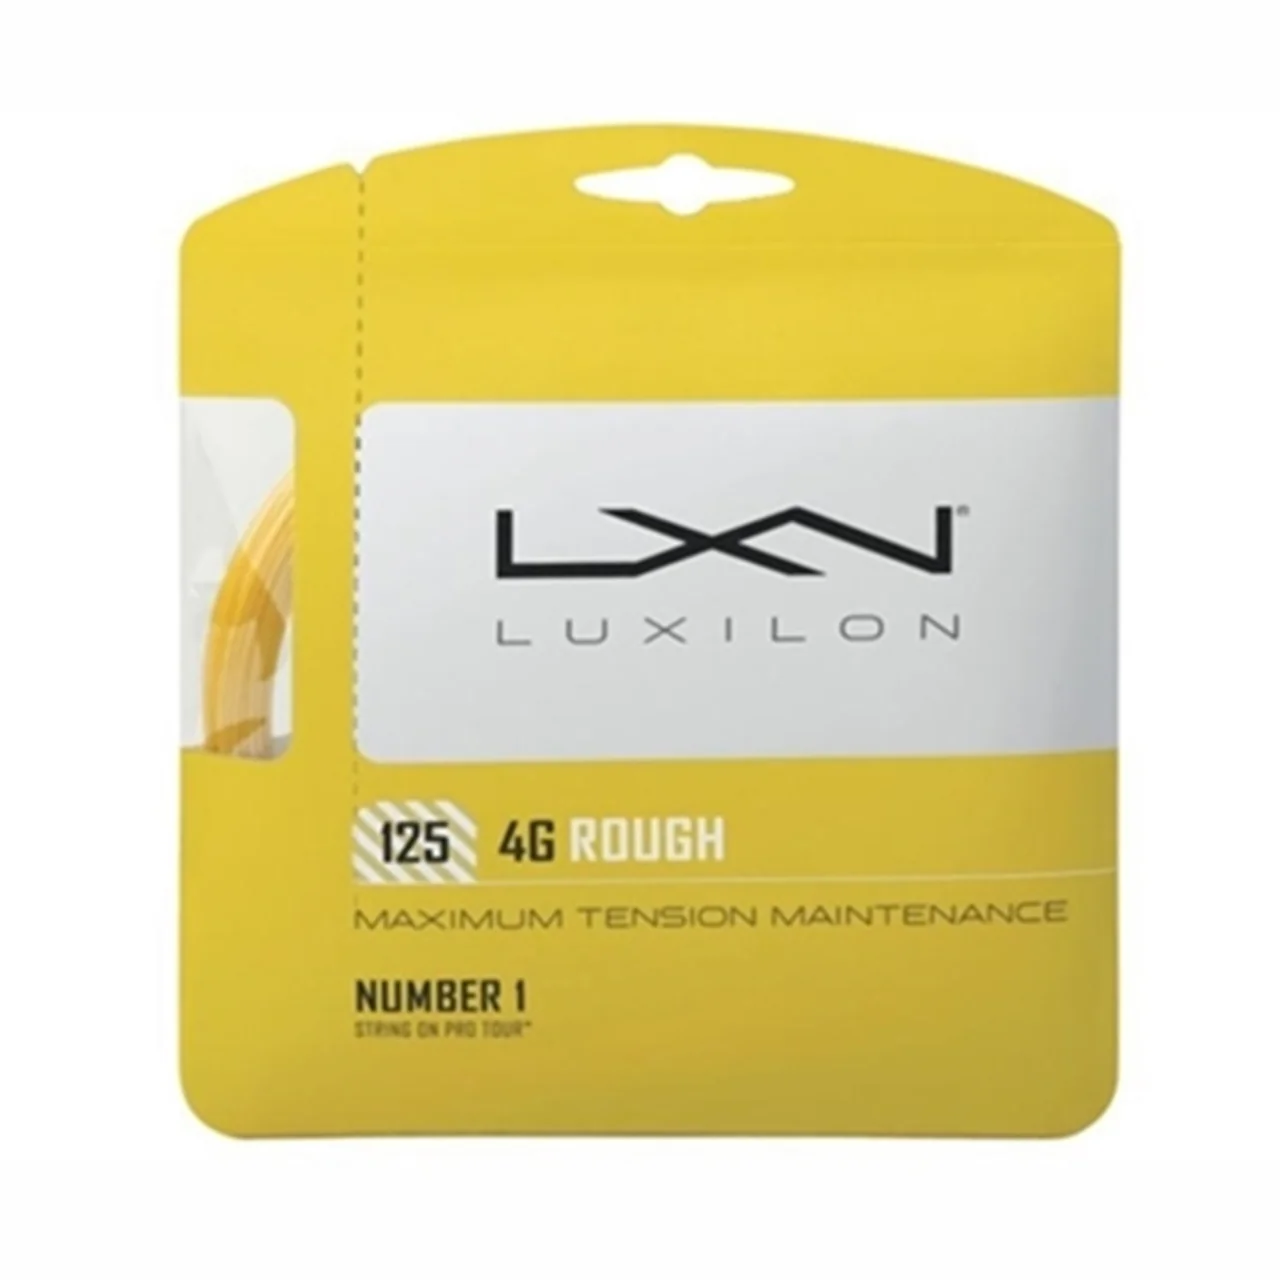 Luxilon 4G Rough Gold Set